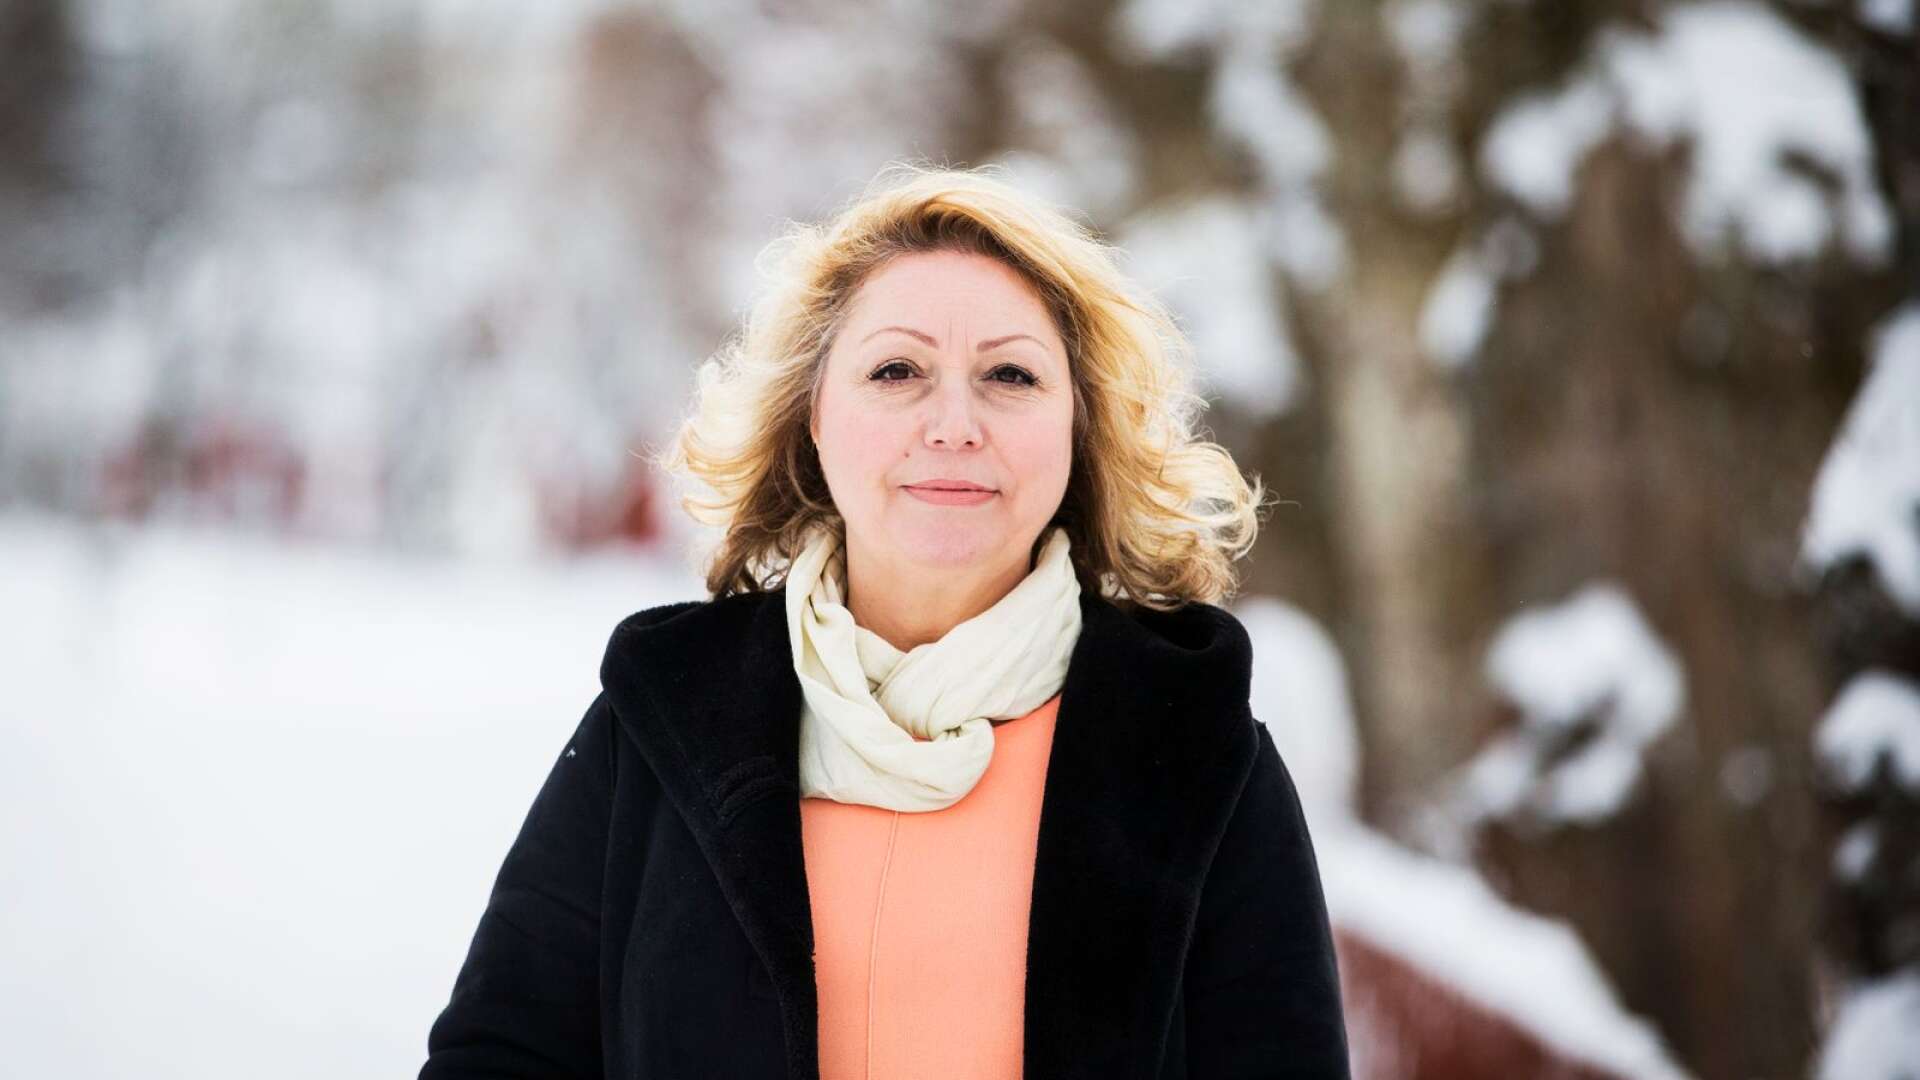 Grekiska Eleni Kanari har drömt om att flytta till Sverige i över 20 år. I slutet av 2020 blev drömmen verklighet.